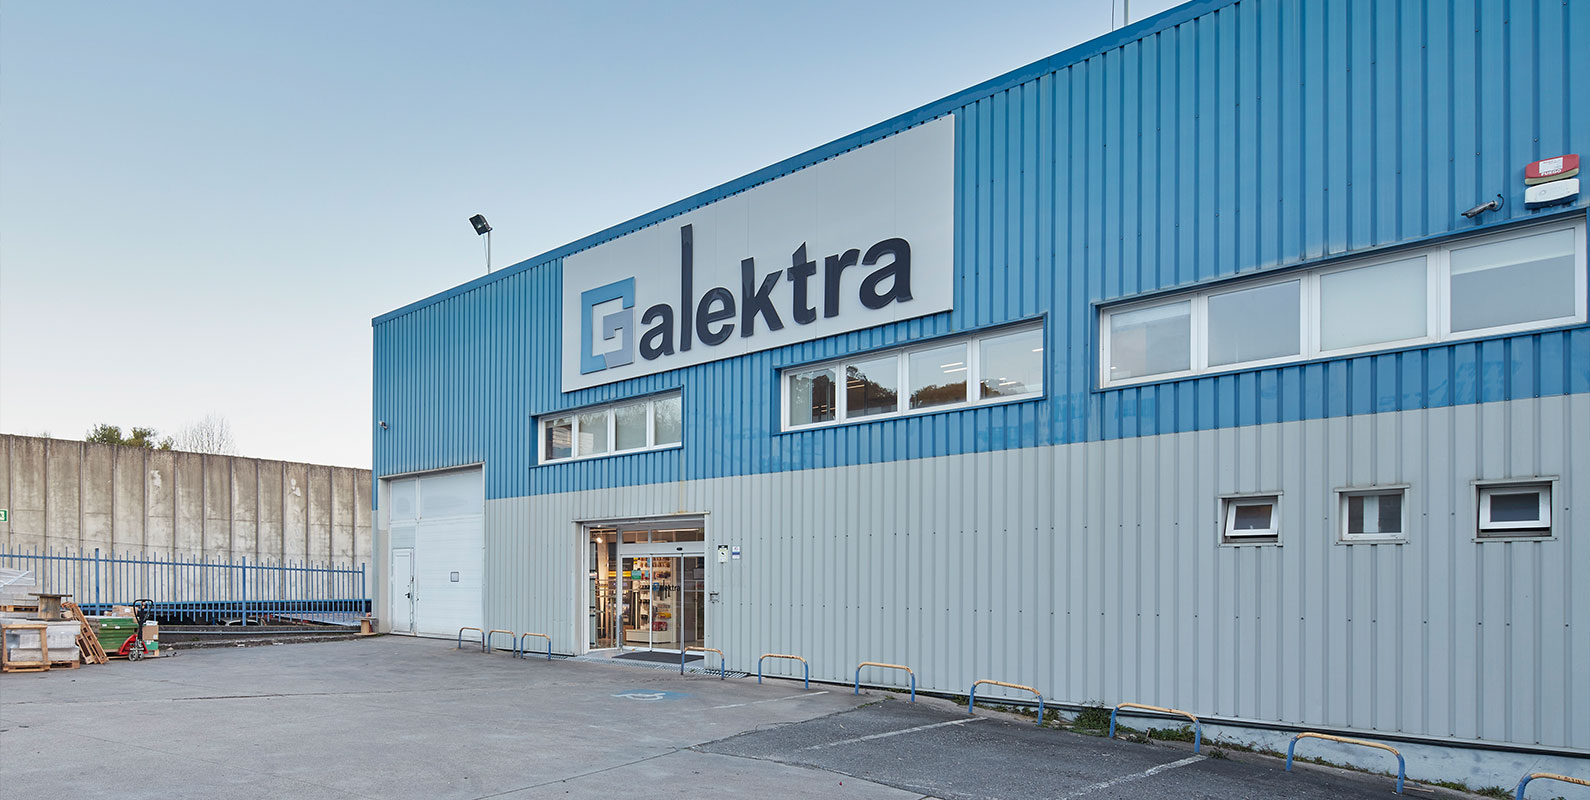 Galektra VIGO - Store - Grupo Elektra